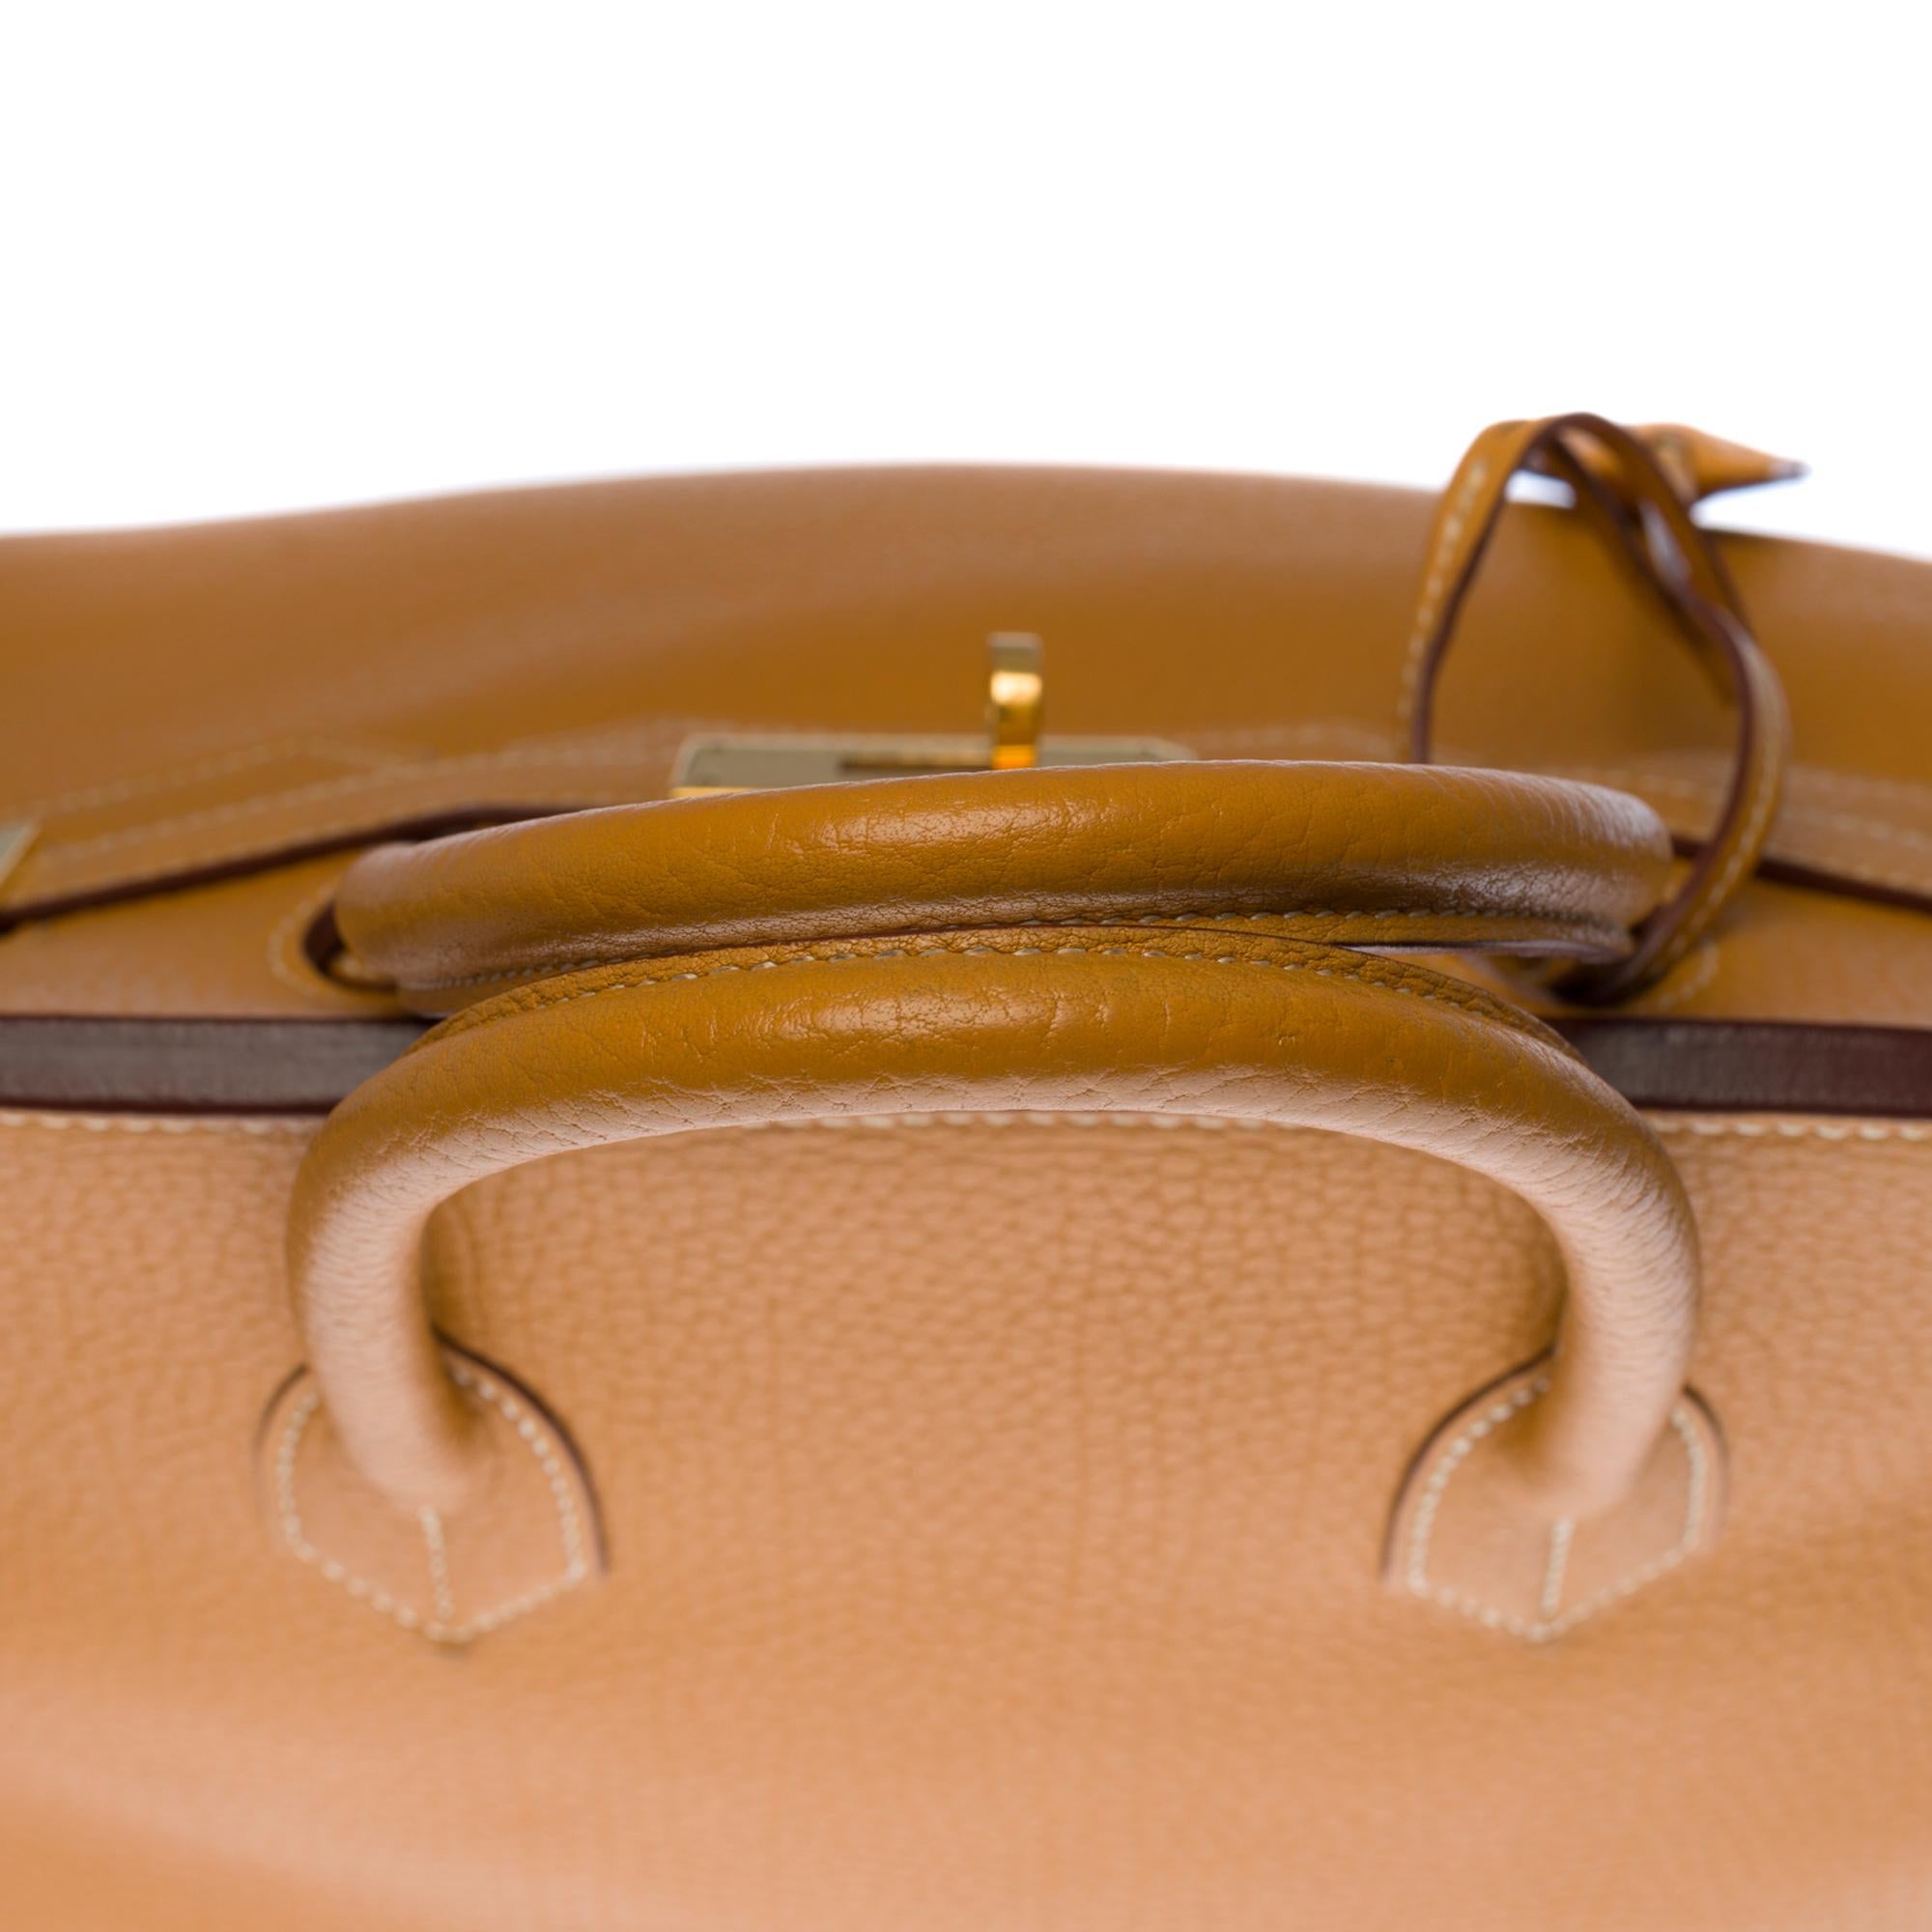 Rare Hermès Haut-à-Courroies (HAC) handbag in Gold Vache Ardennes leather, GHW 1